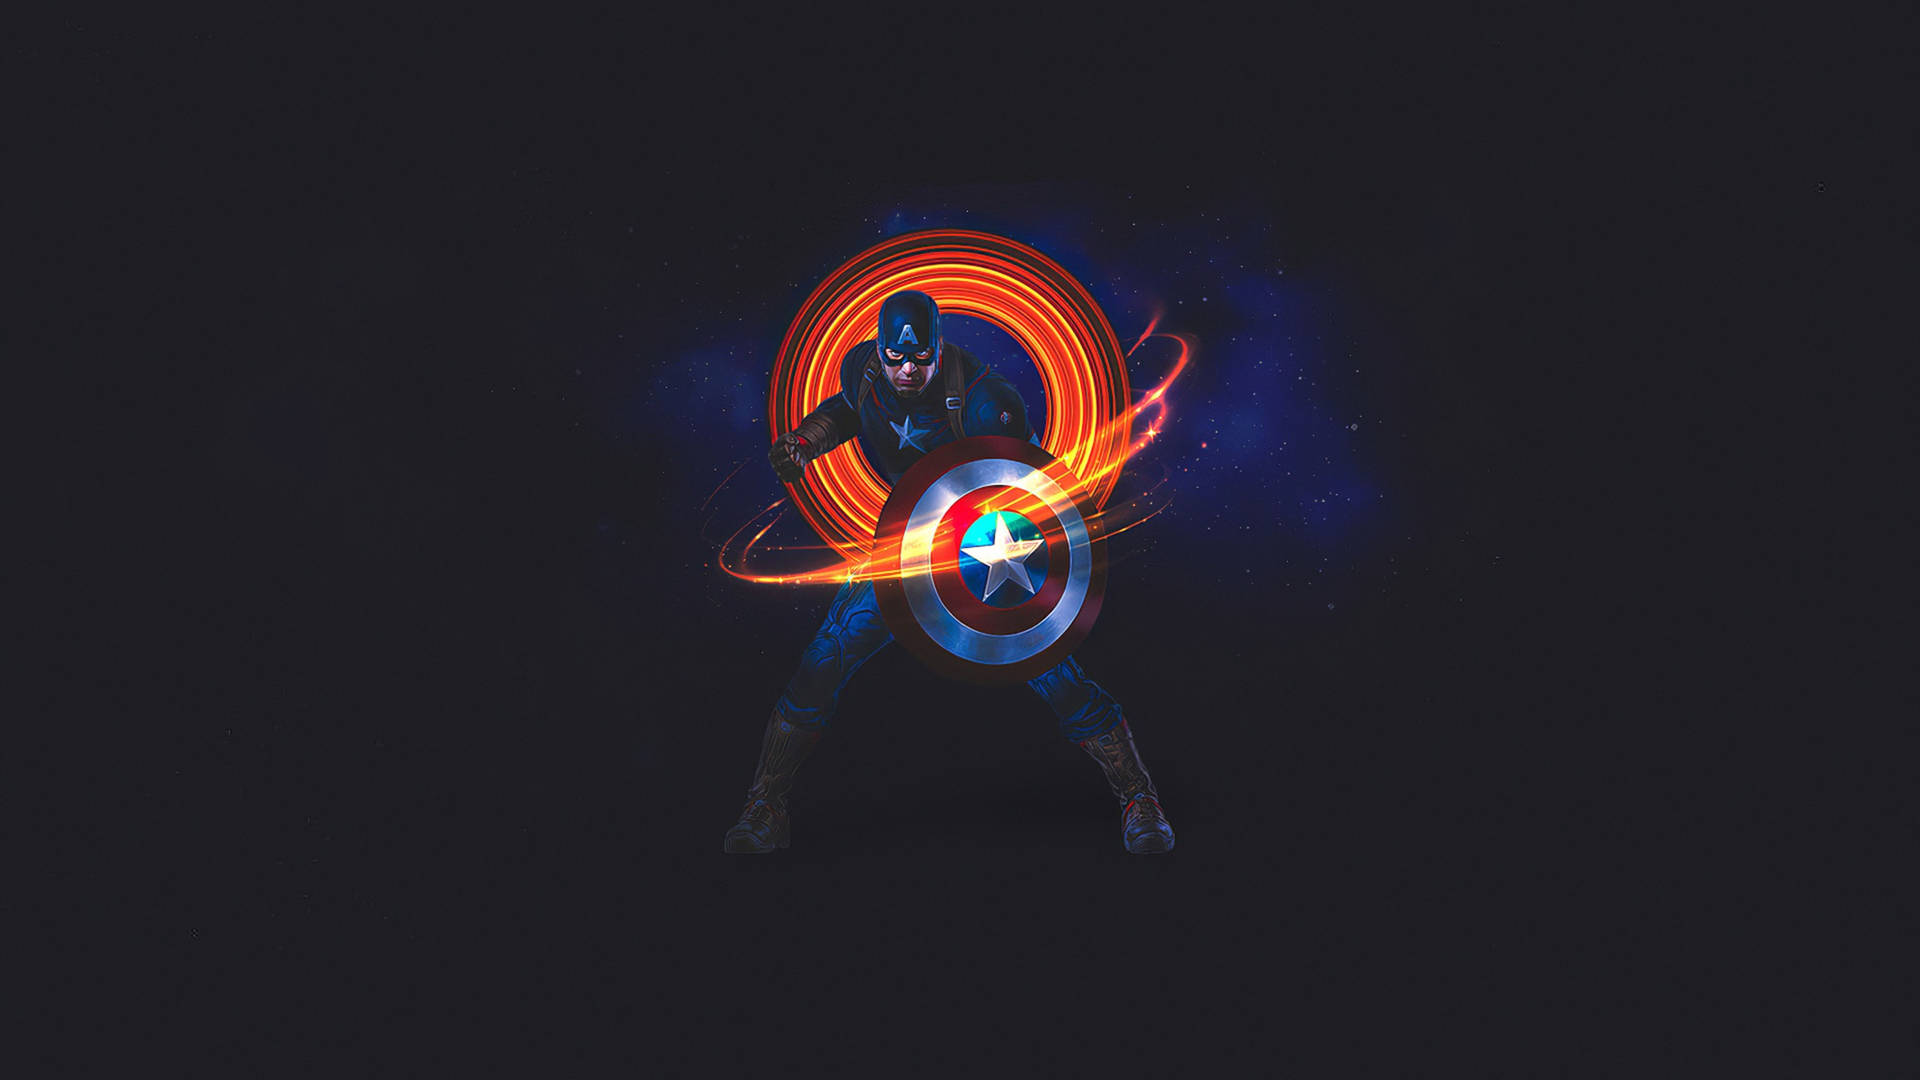 Captain America Superhero Digital Art Wallpaper